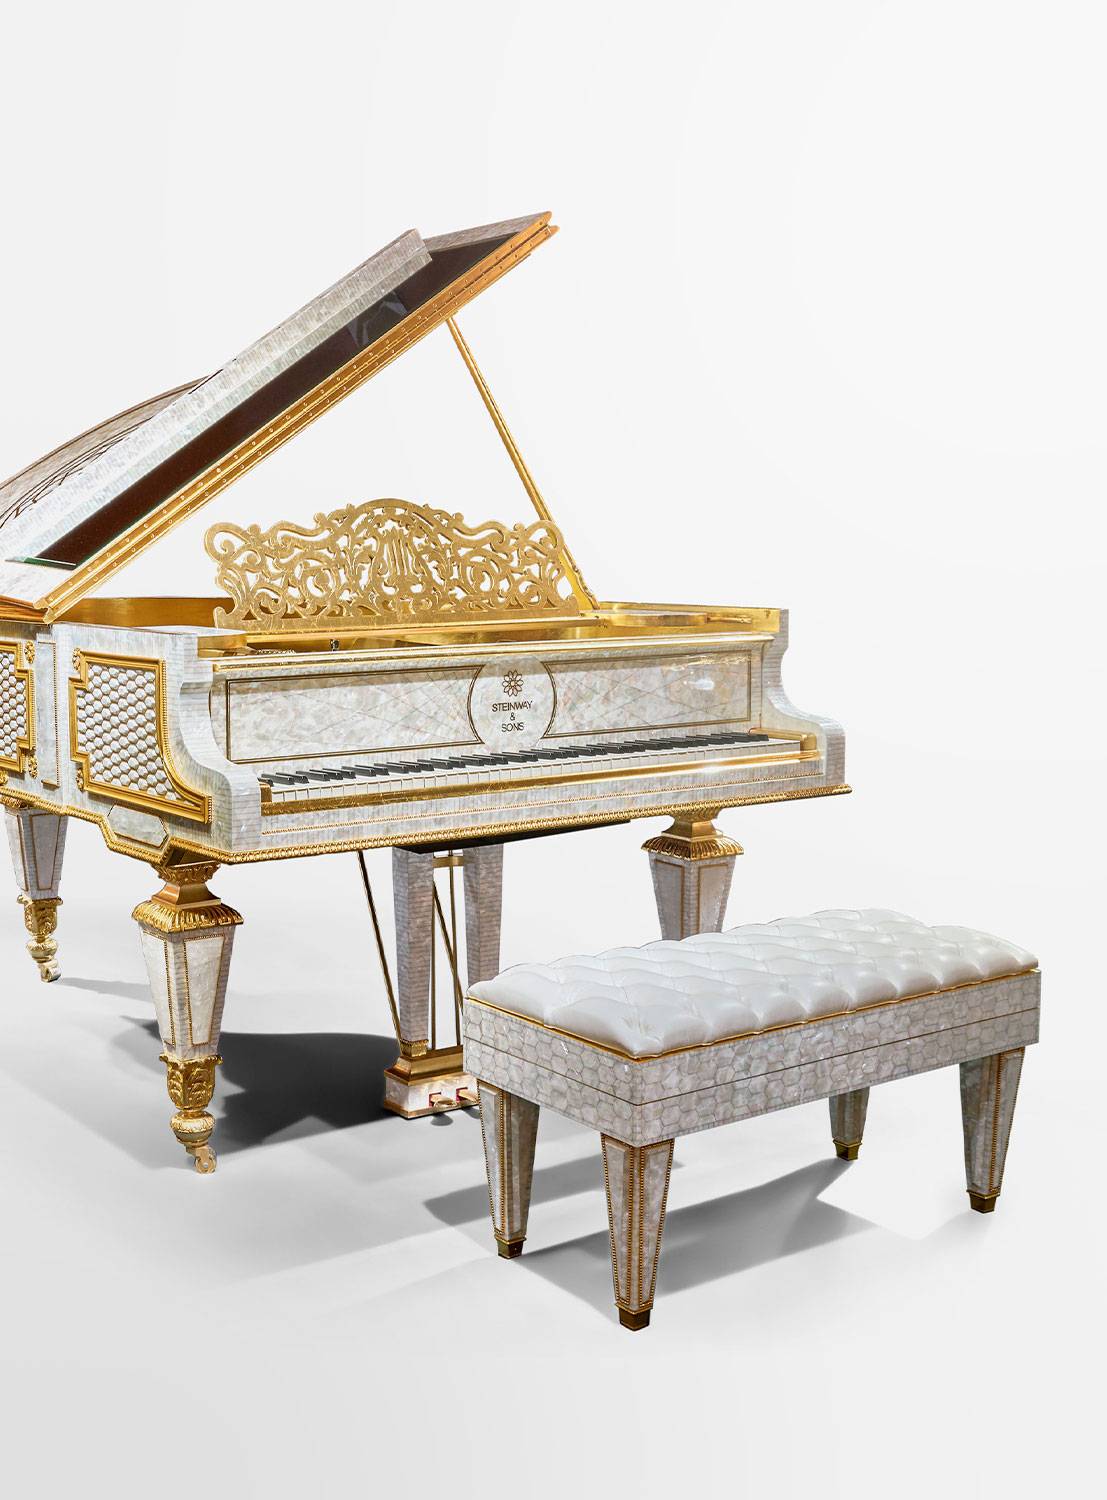 cg-capelletti-piano-italian-furniture-luxury-preview-00